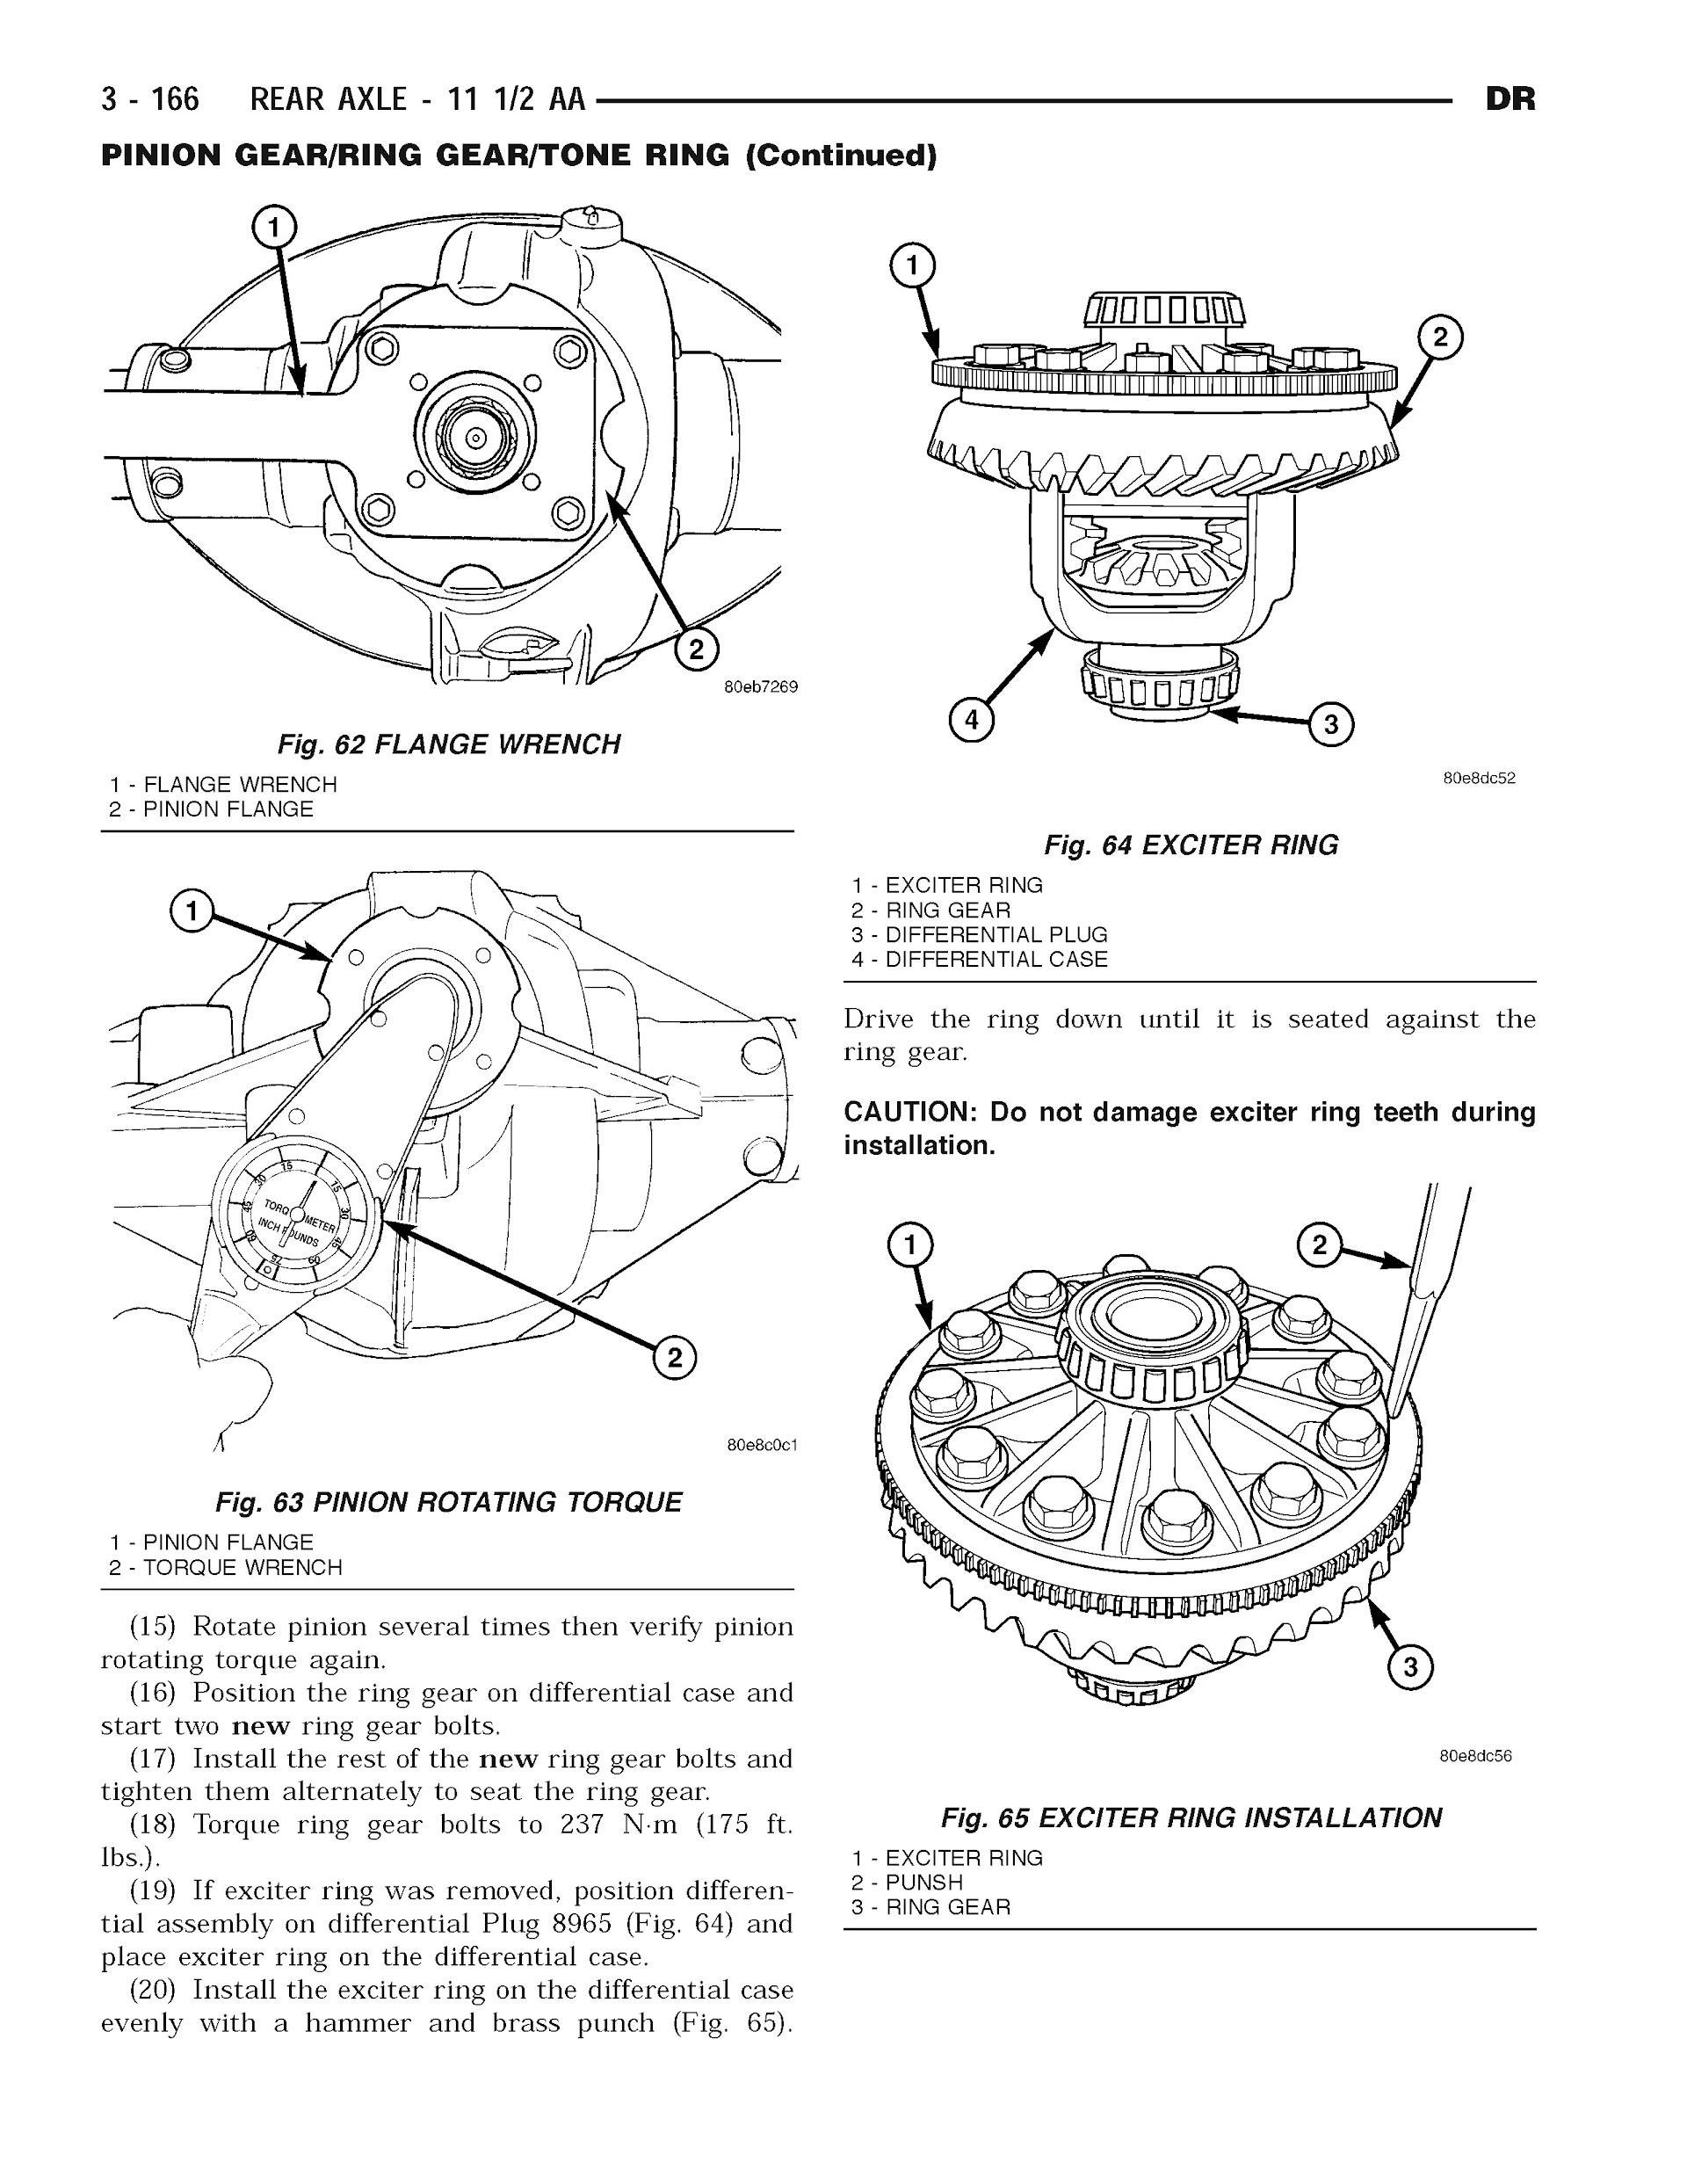 2004 Dodge RAM Truck Repair Manual, Rear Axle